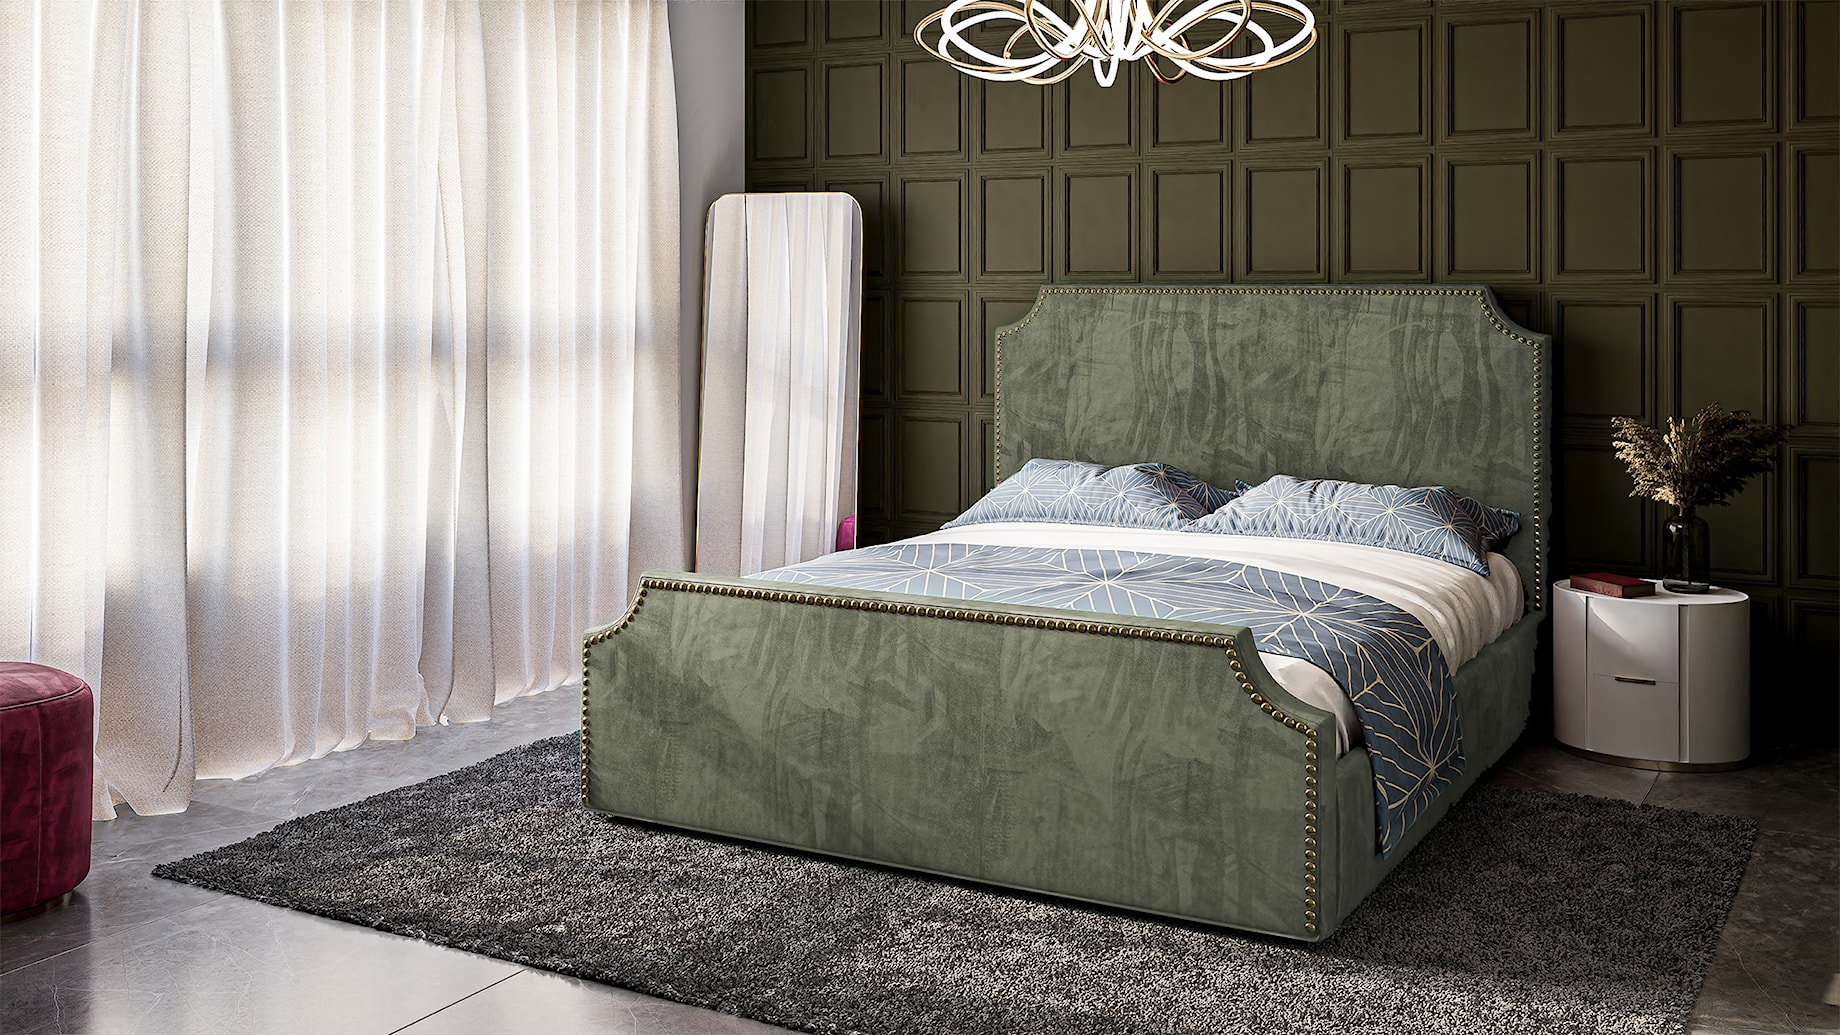 Oliwkowe łóżko tapicerowane w stylu barokowym